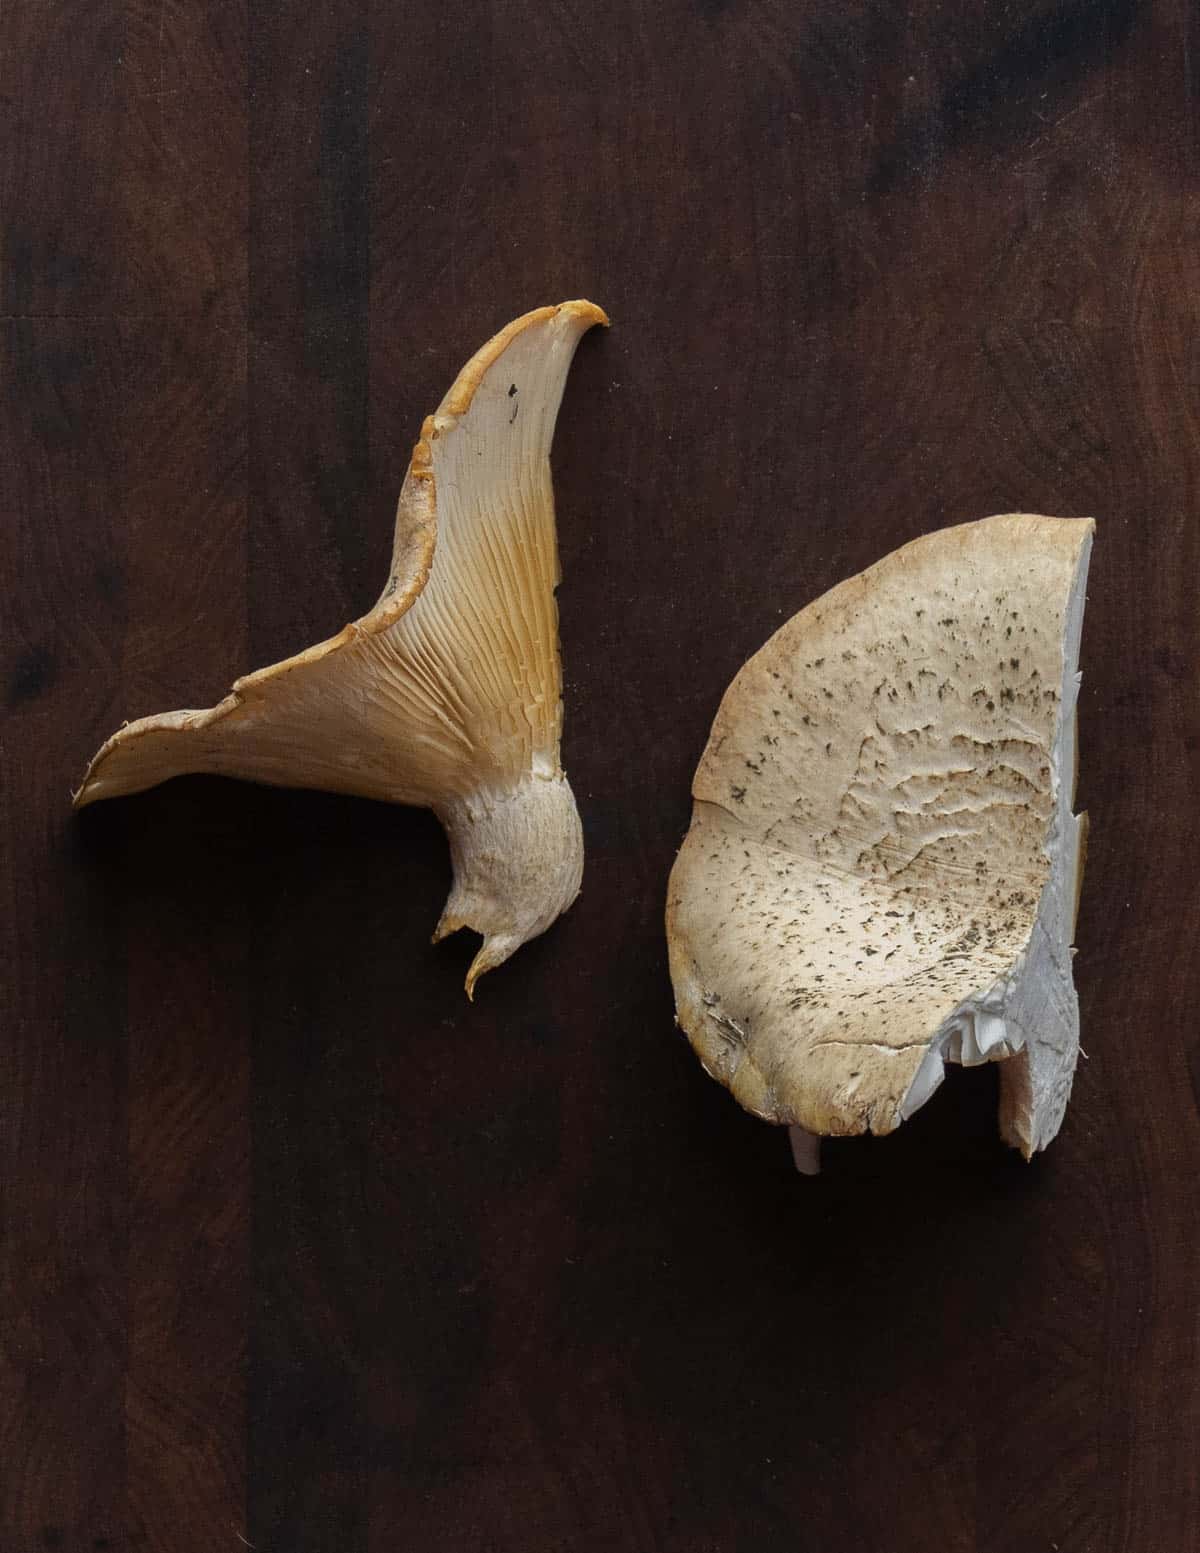 Pleurotus dryinus, the veiled oyster mushroom. 